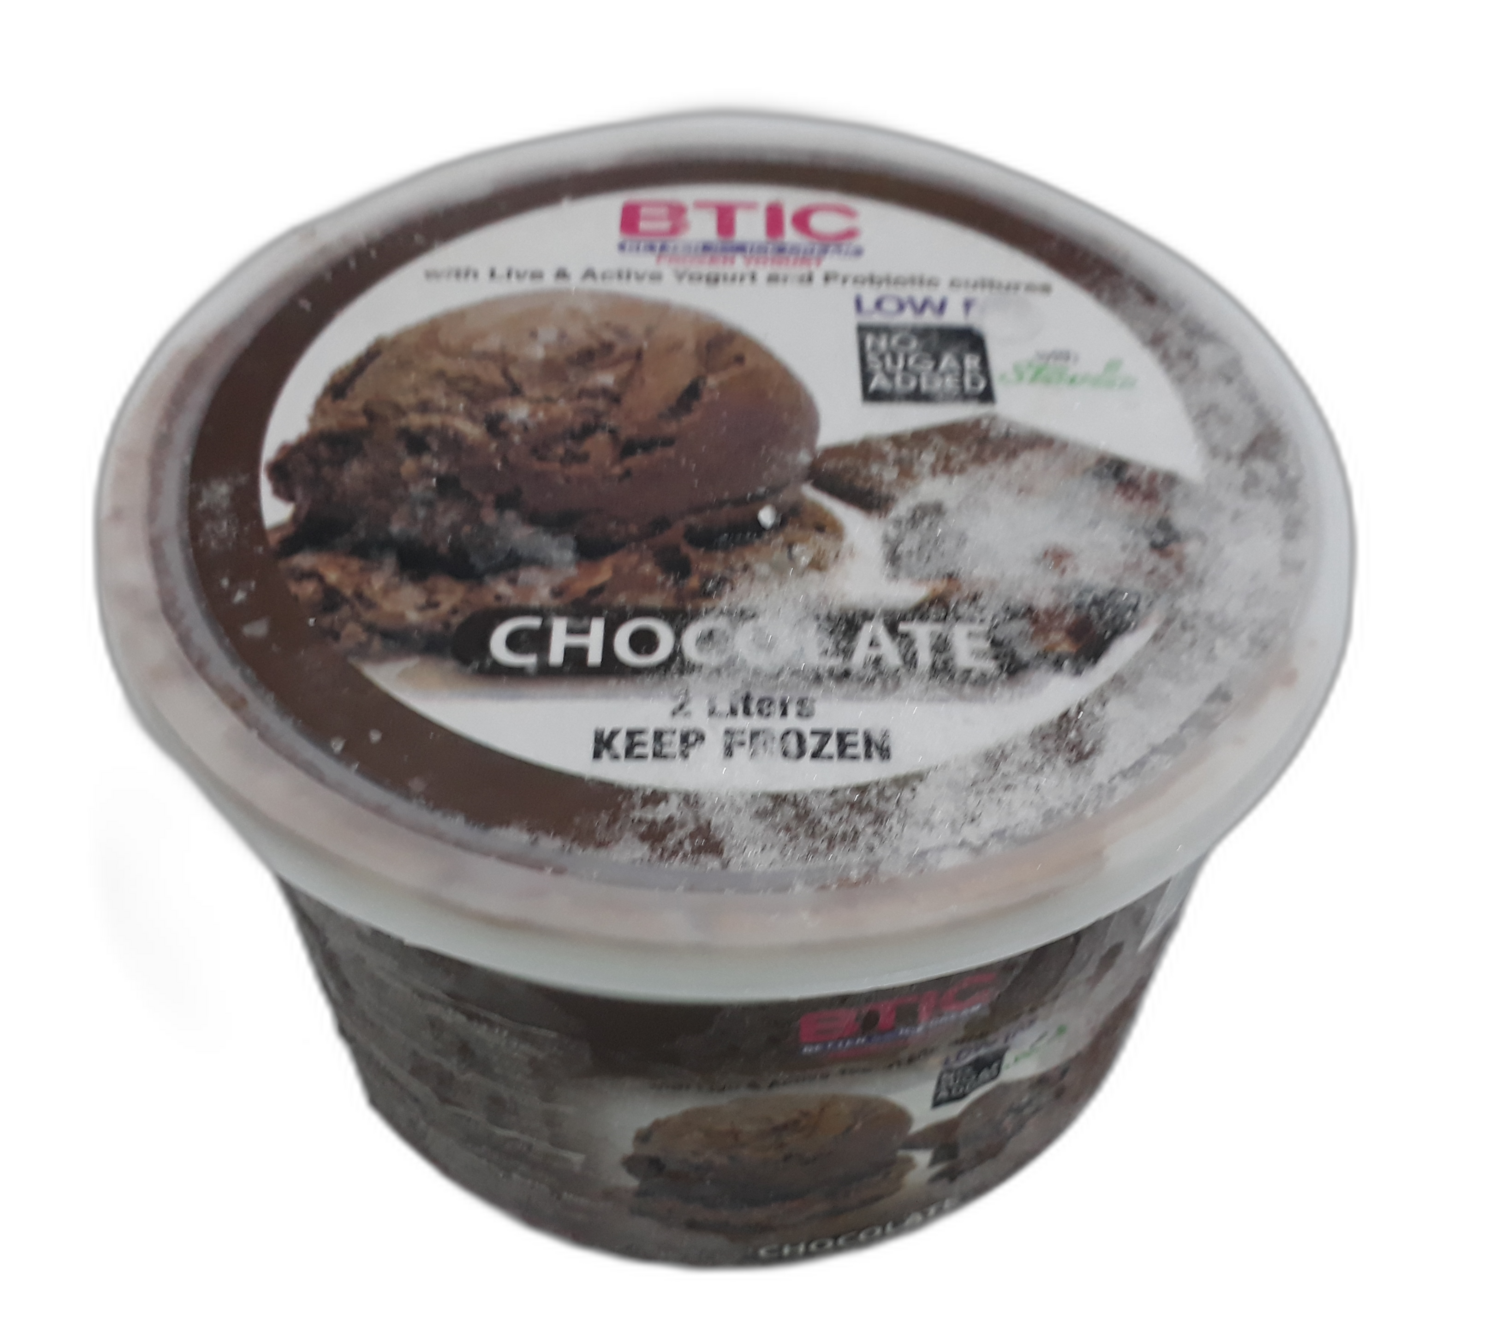 NO SUGAR CHOCOLATE Yogurt Ice Cream 2 Liter